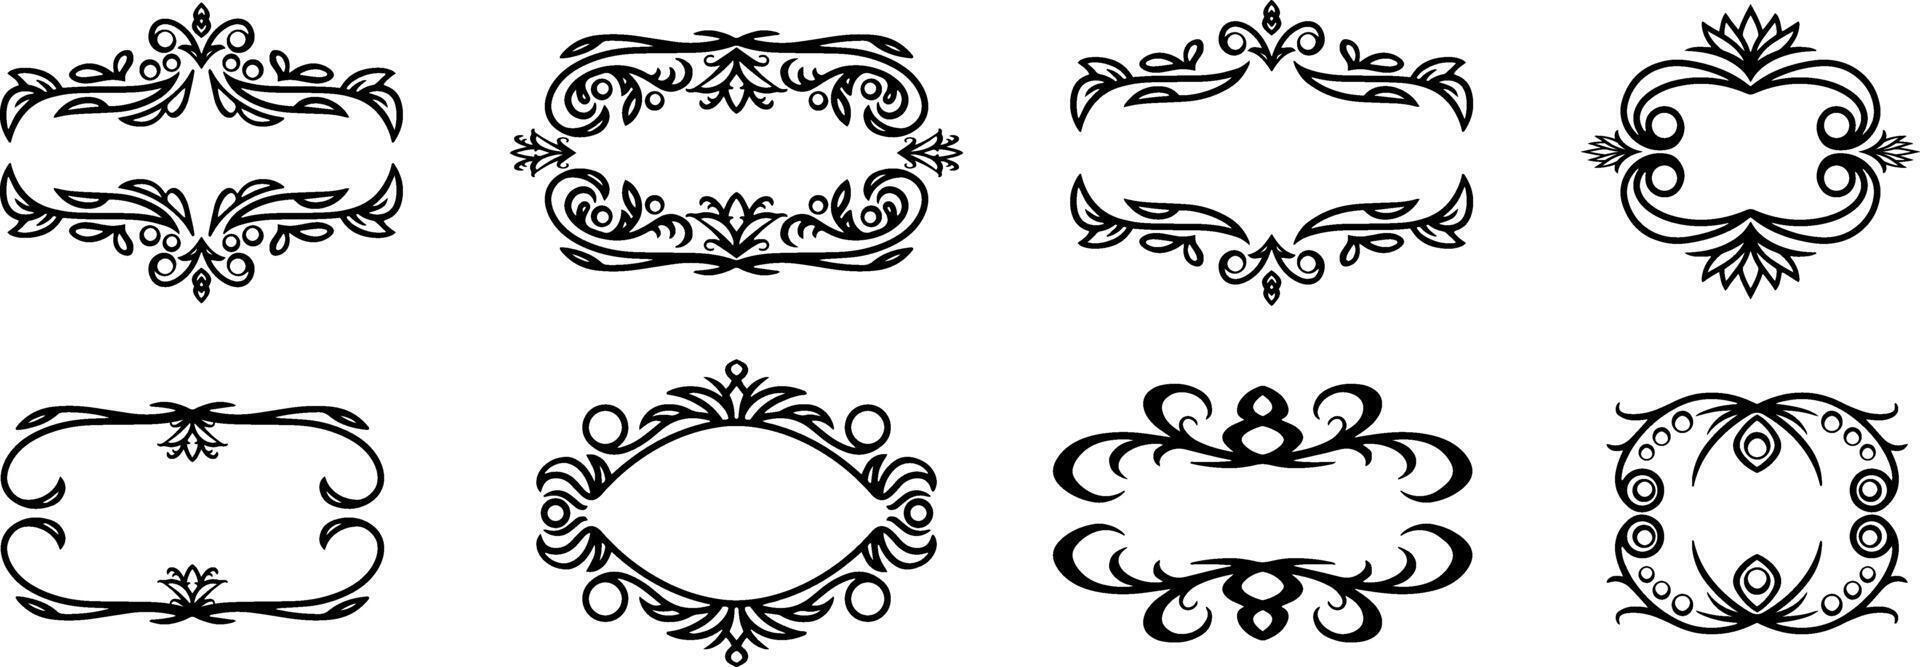 Vintage element Damask frame border pattern Engraving stencil Vector illustration